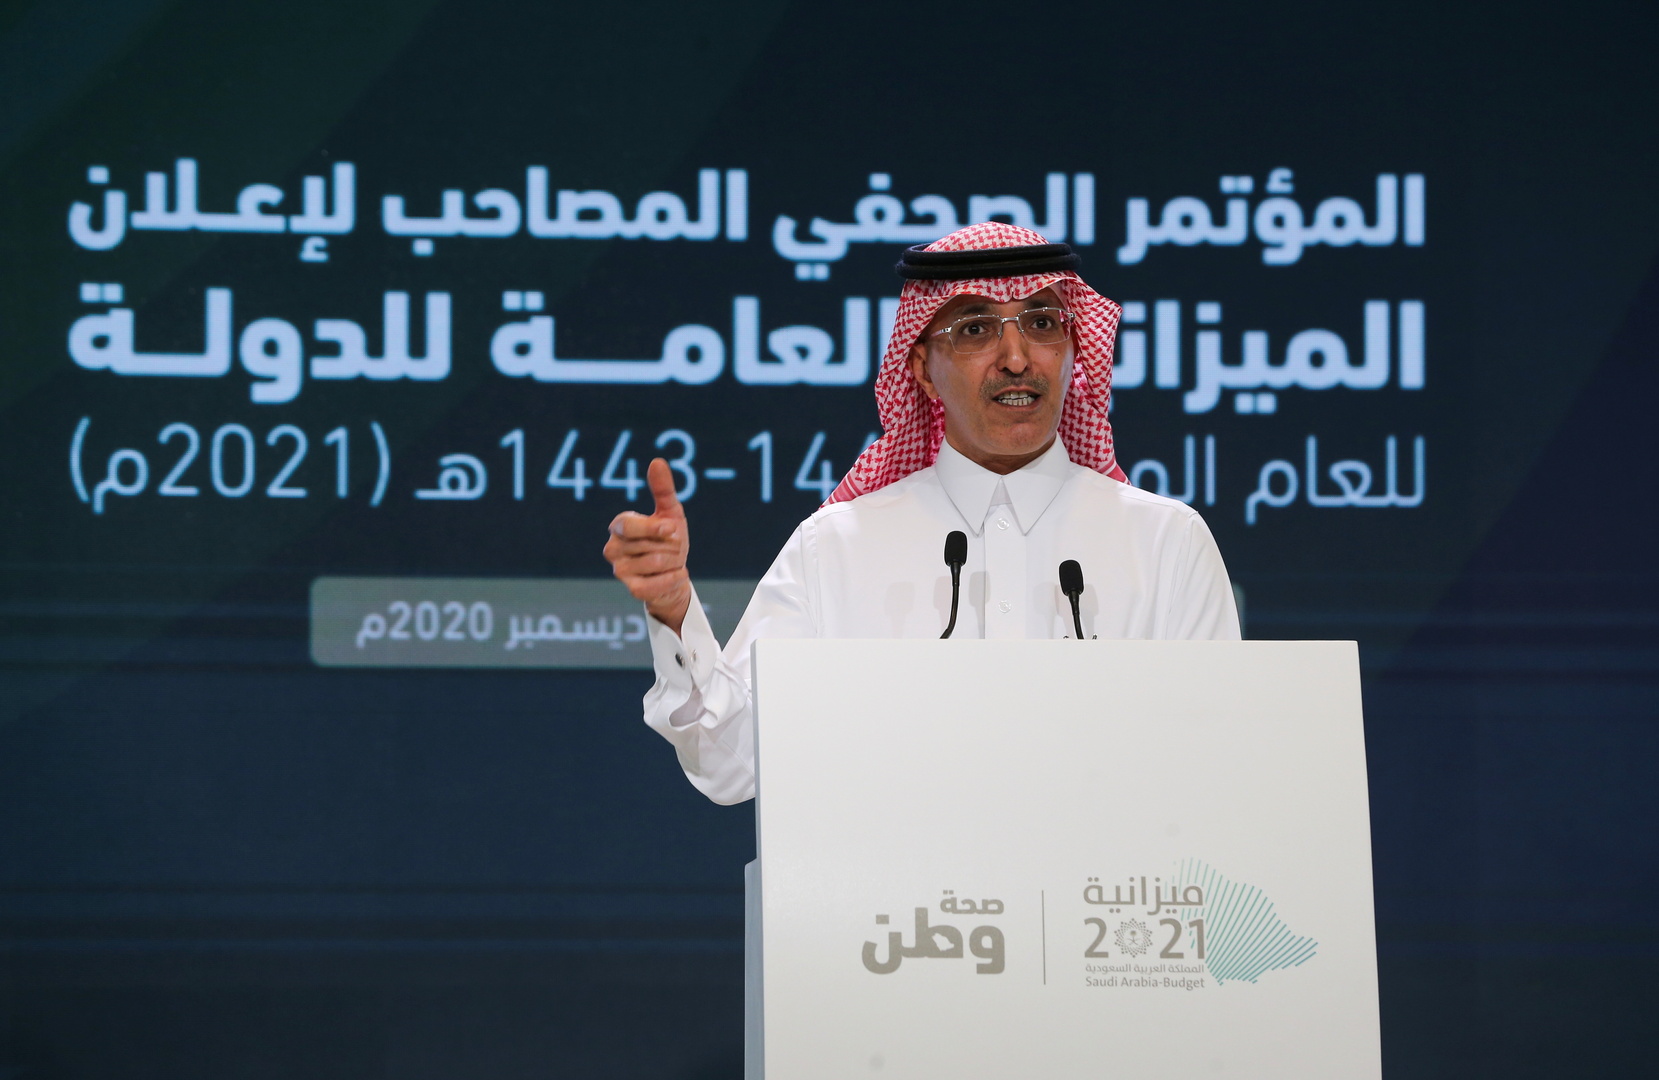 وزير المالية السعودي يرخص لأول بنكين رقميين في المملكة